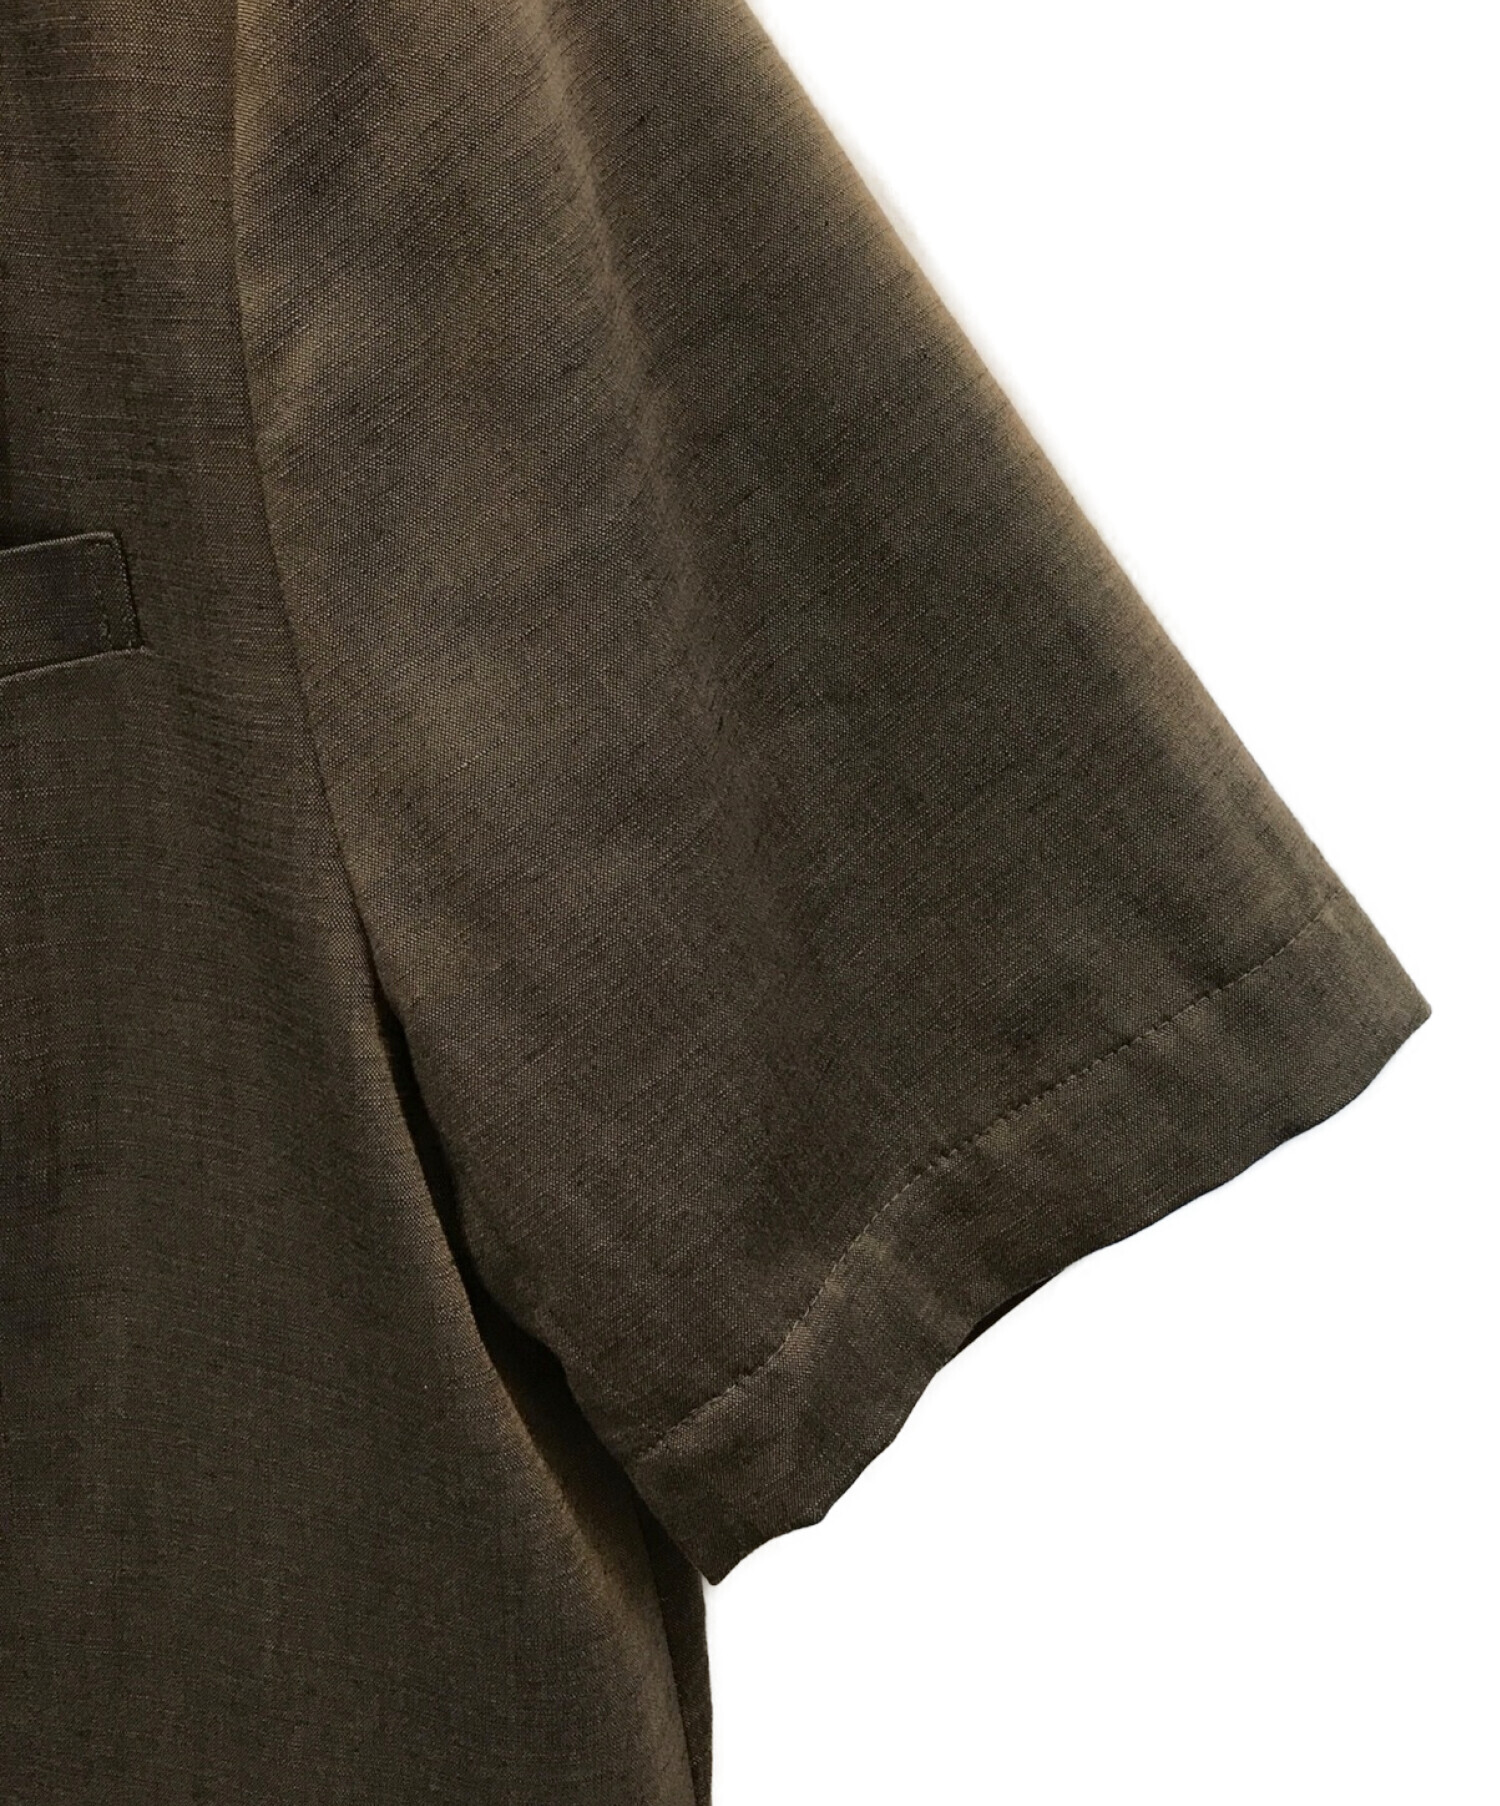 MAISON SPECIAL (メゾンスペシャル) ハーフスリーブジャケット 半袖ダブルジャケット ブラウン サイズ:M